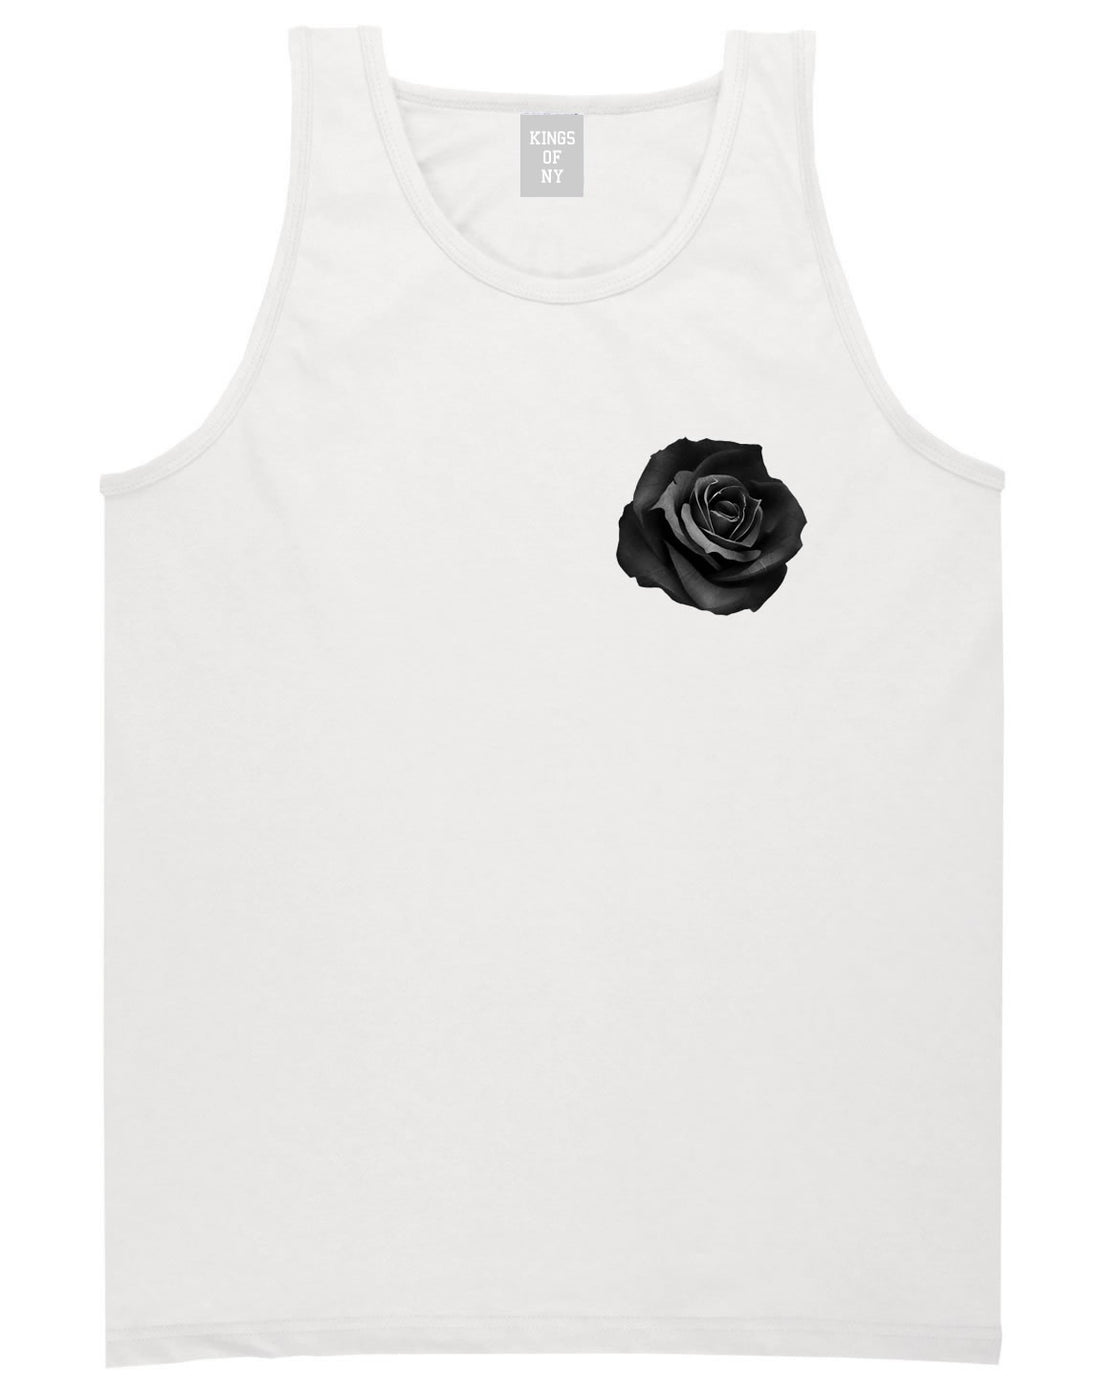 Black Noir Rose Flower Chest Logo Tank Top in White By Kings Of NY